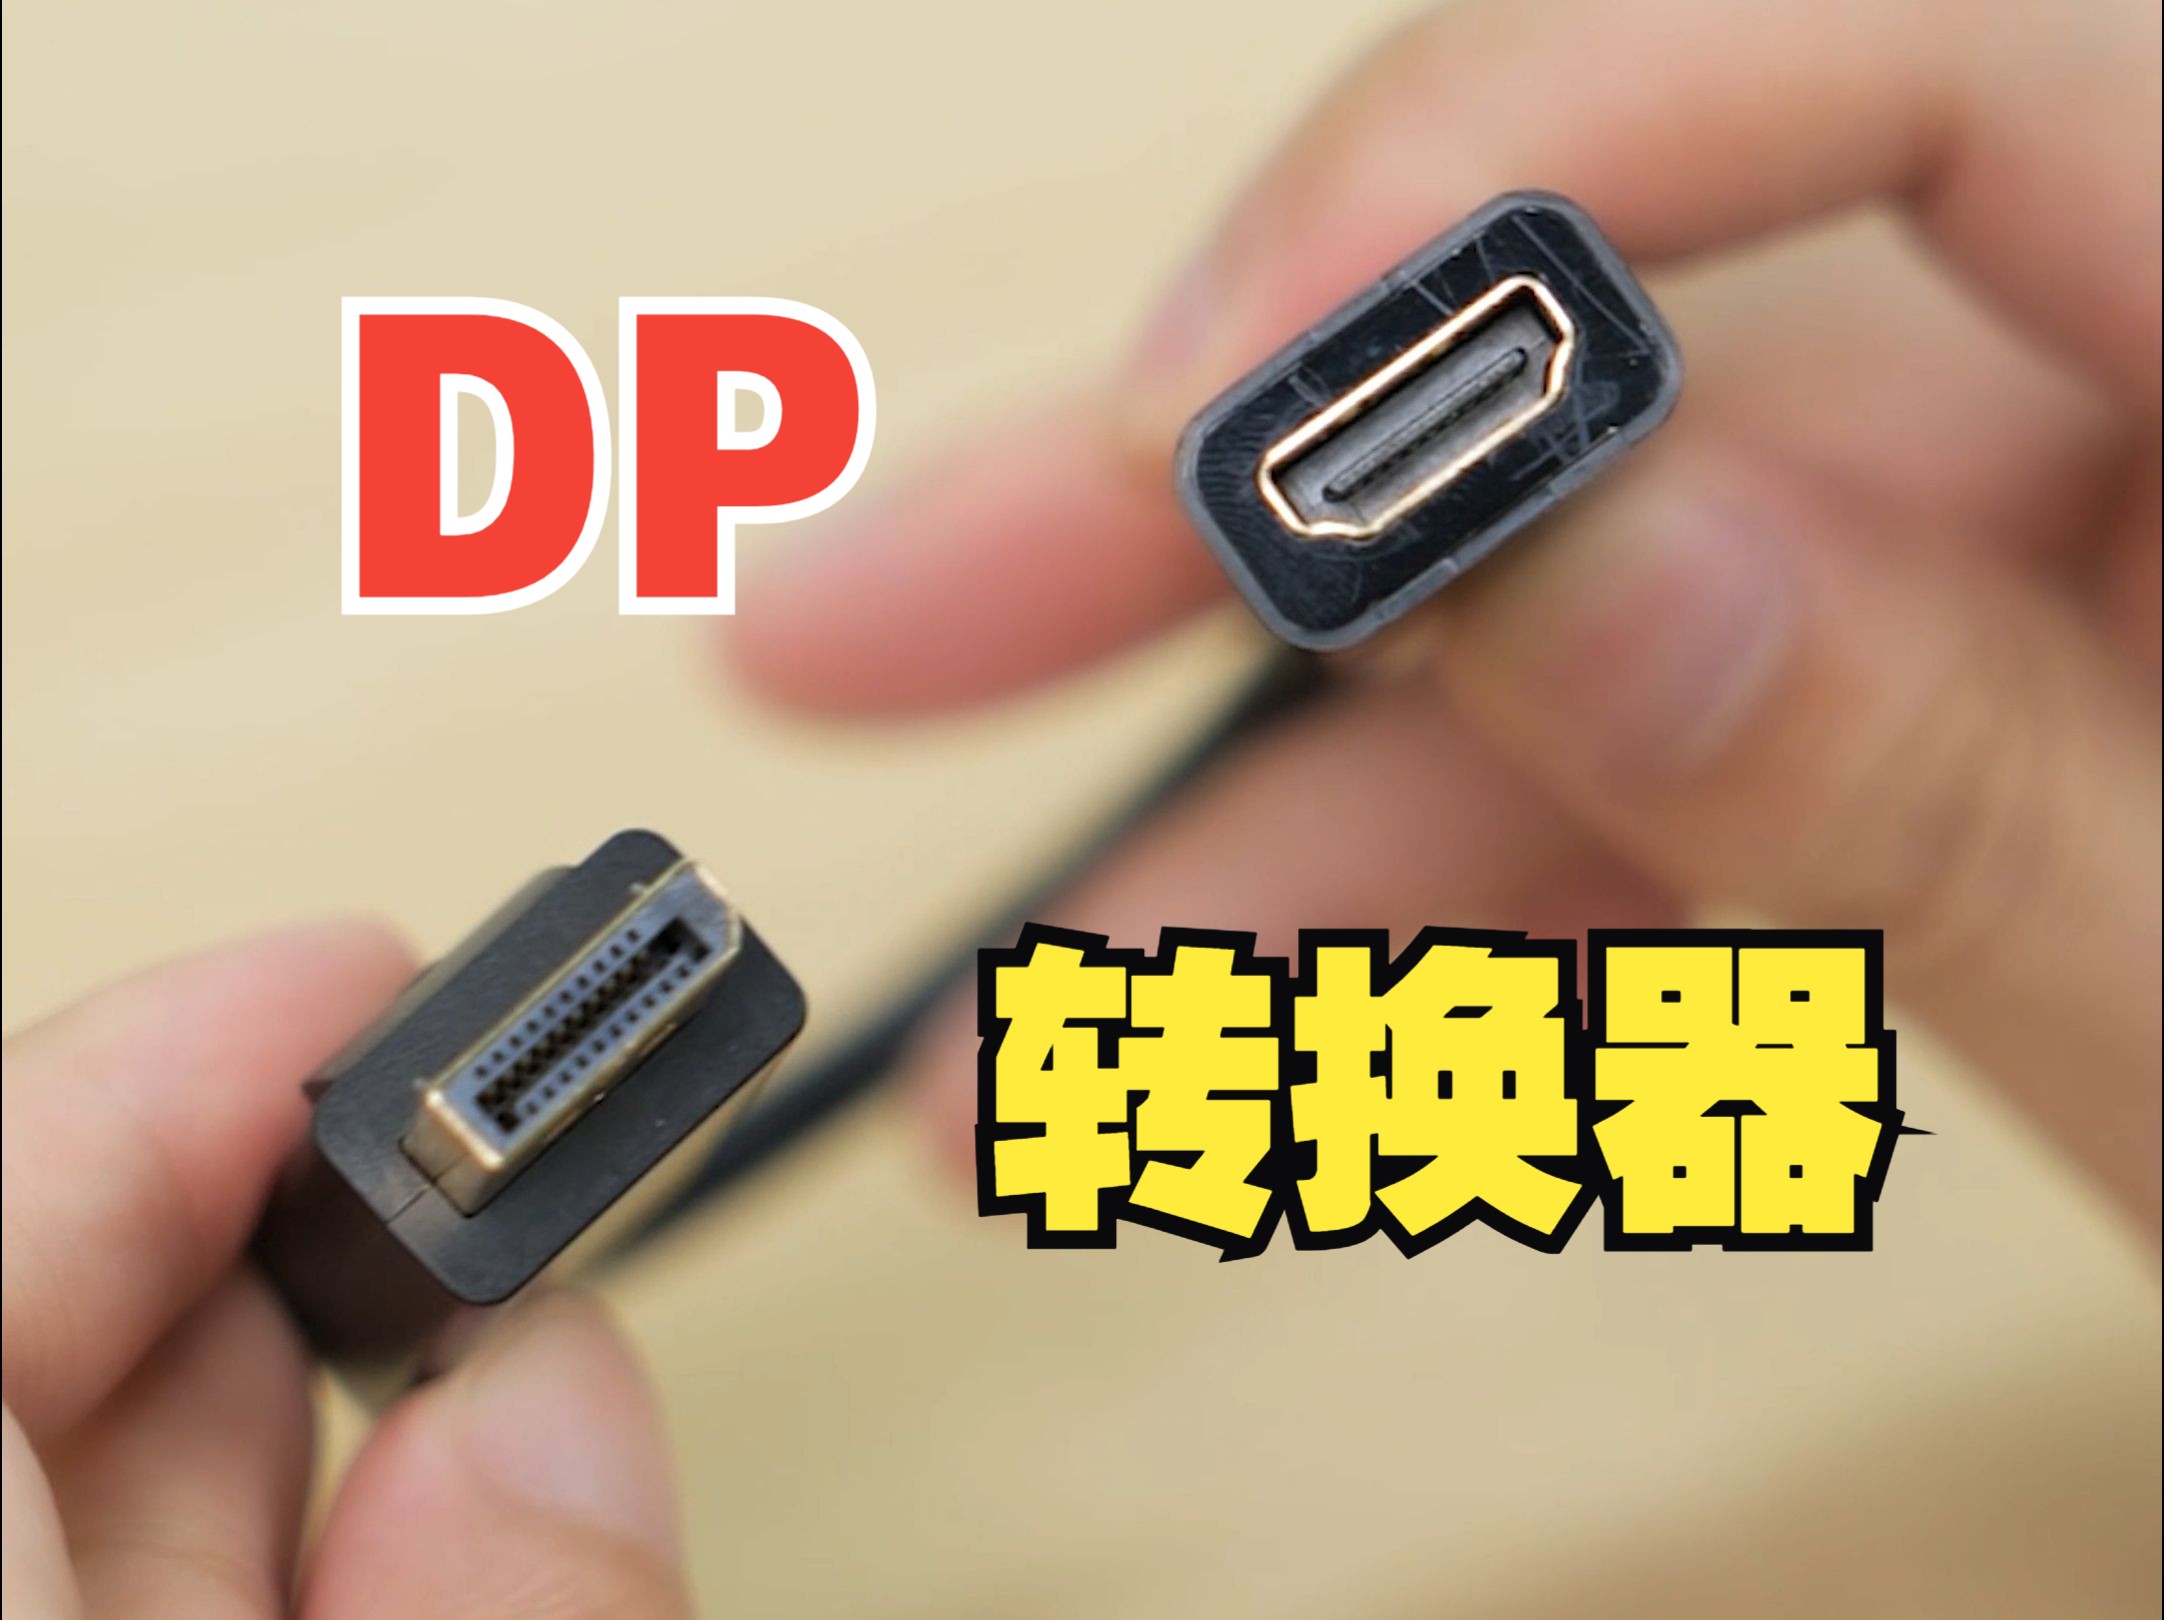 电脑只有DP接口，想连HDMI接口的显示器咋办？【绿联】